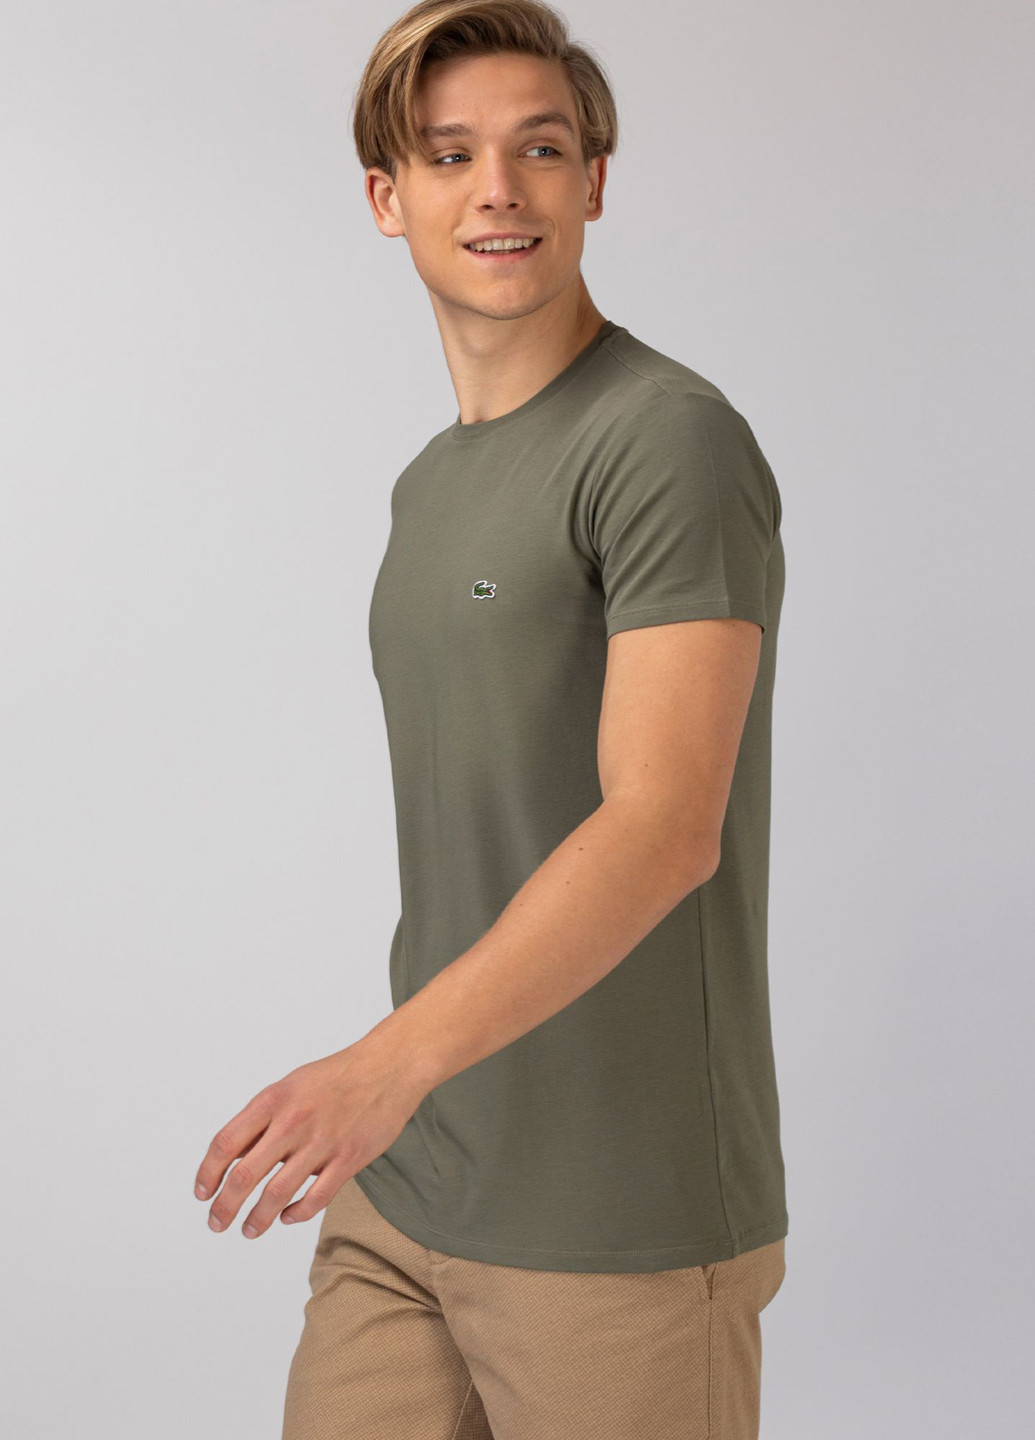 Хаки (оливковая) футболка Lacoste